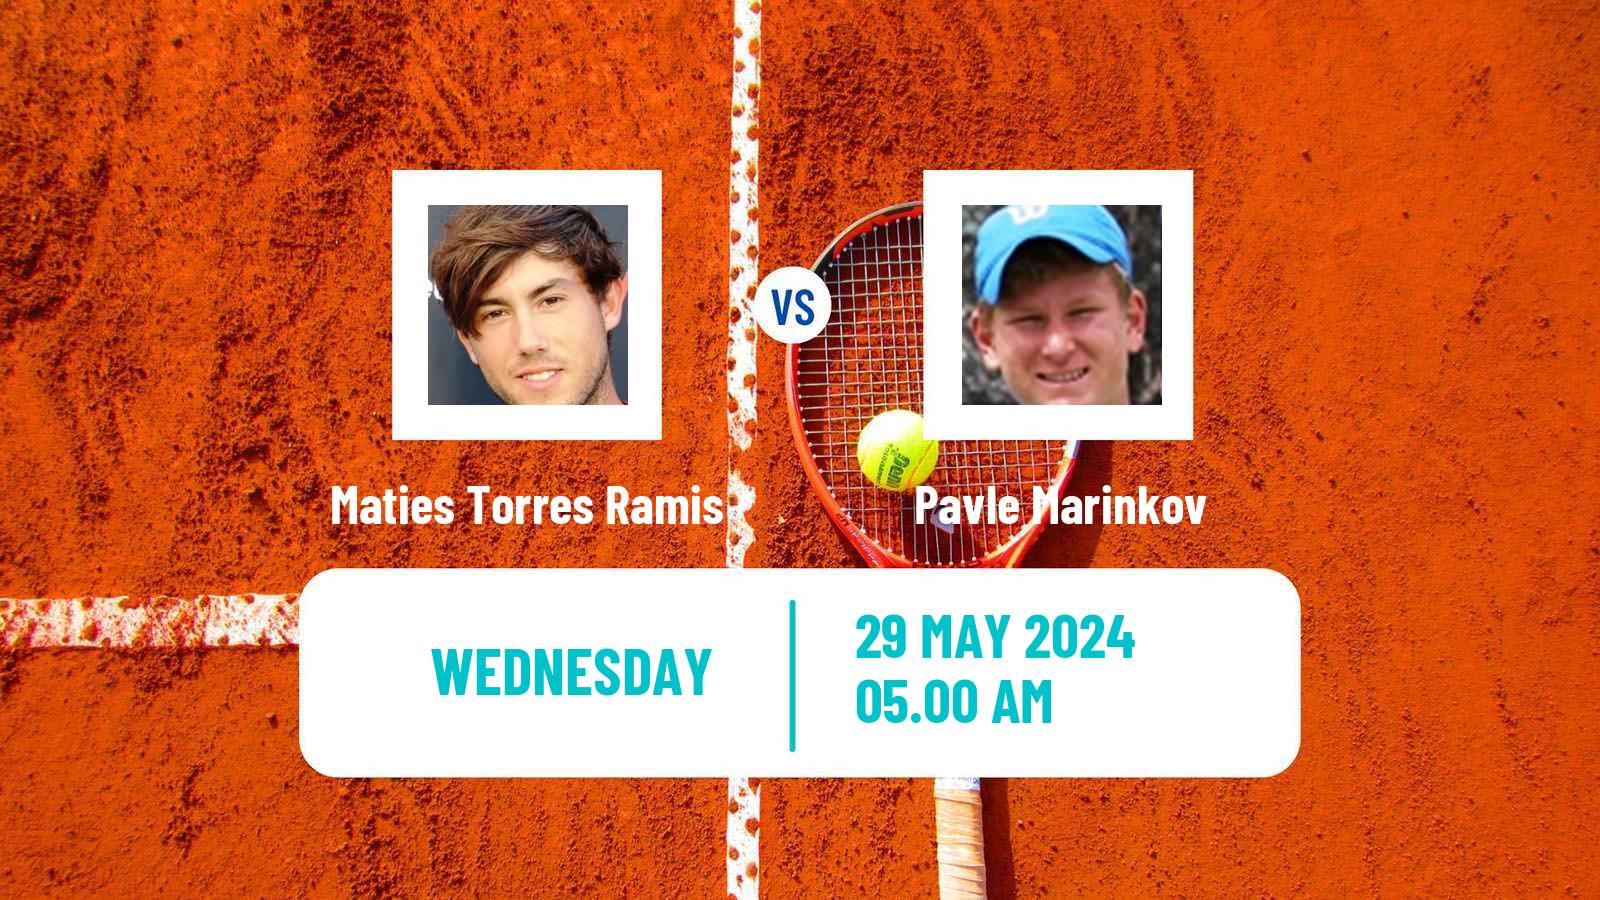 Tennis ITF M15 Bol 2 Men Maties Torres Ramis - Pavle Marinkov